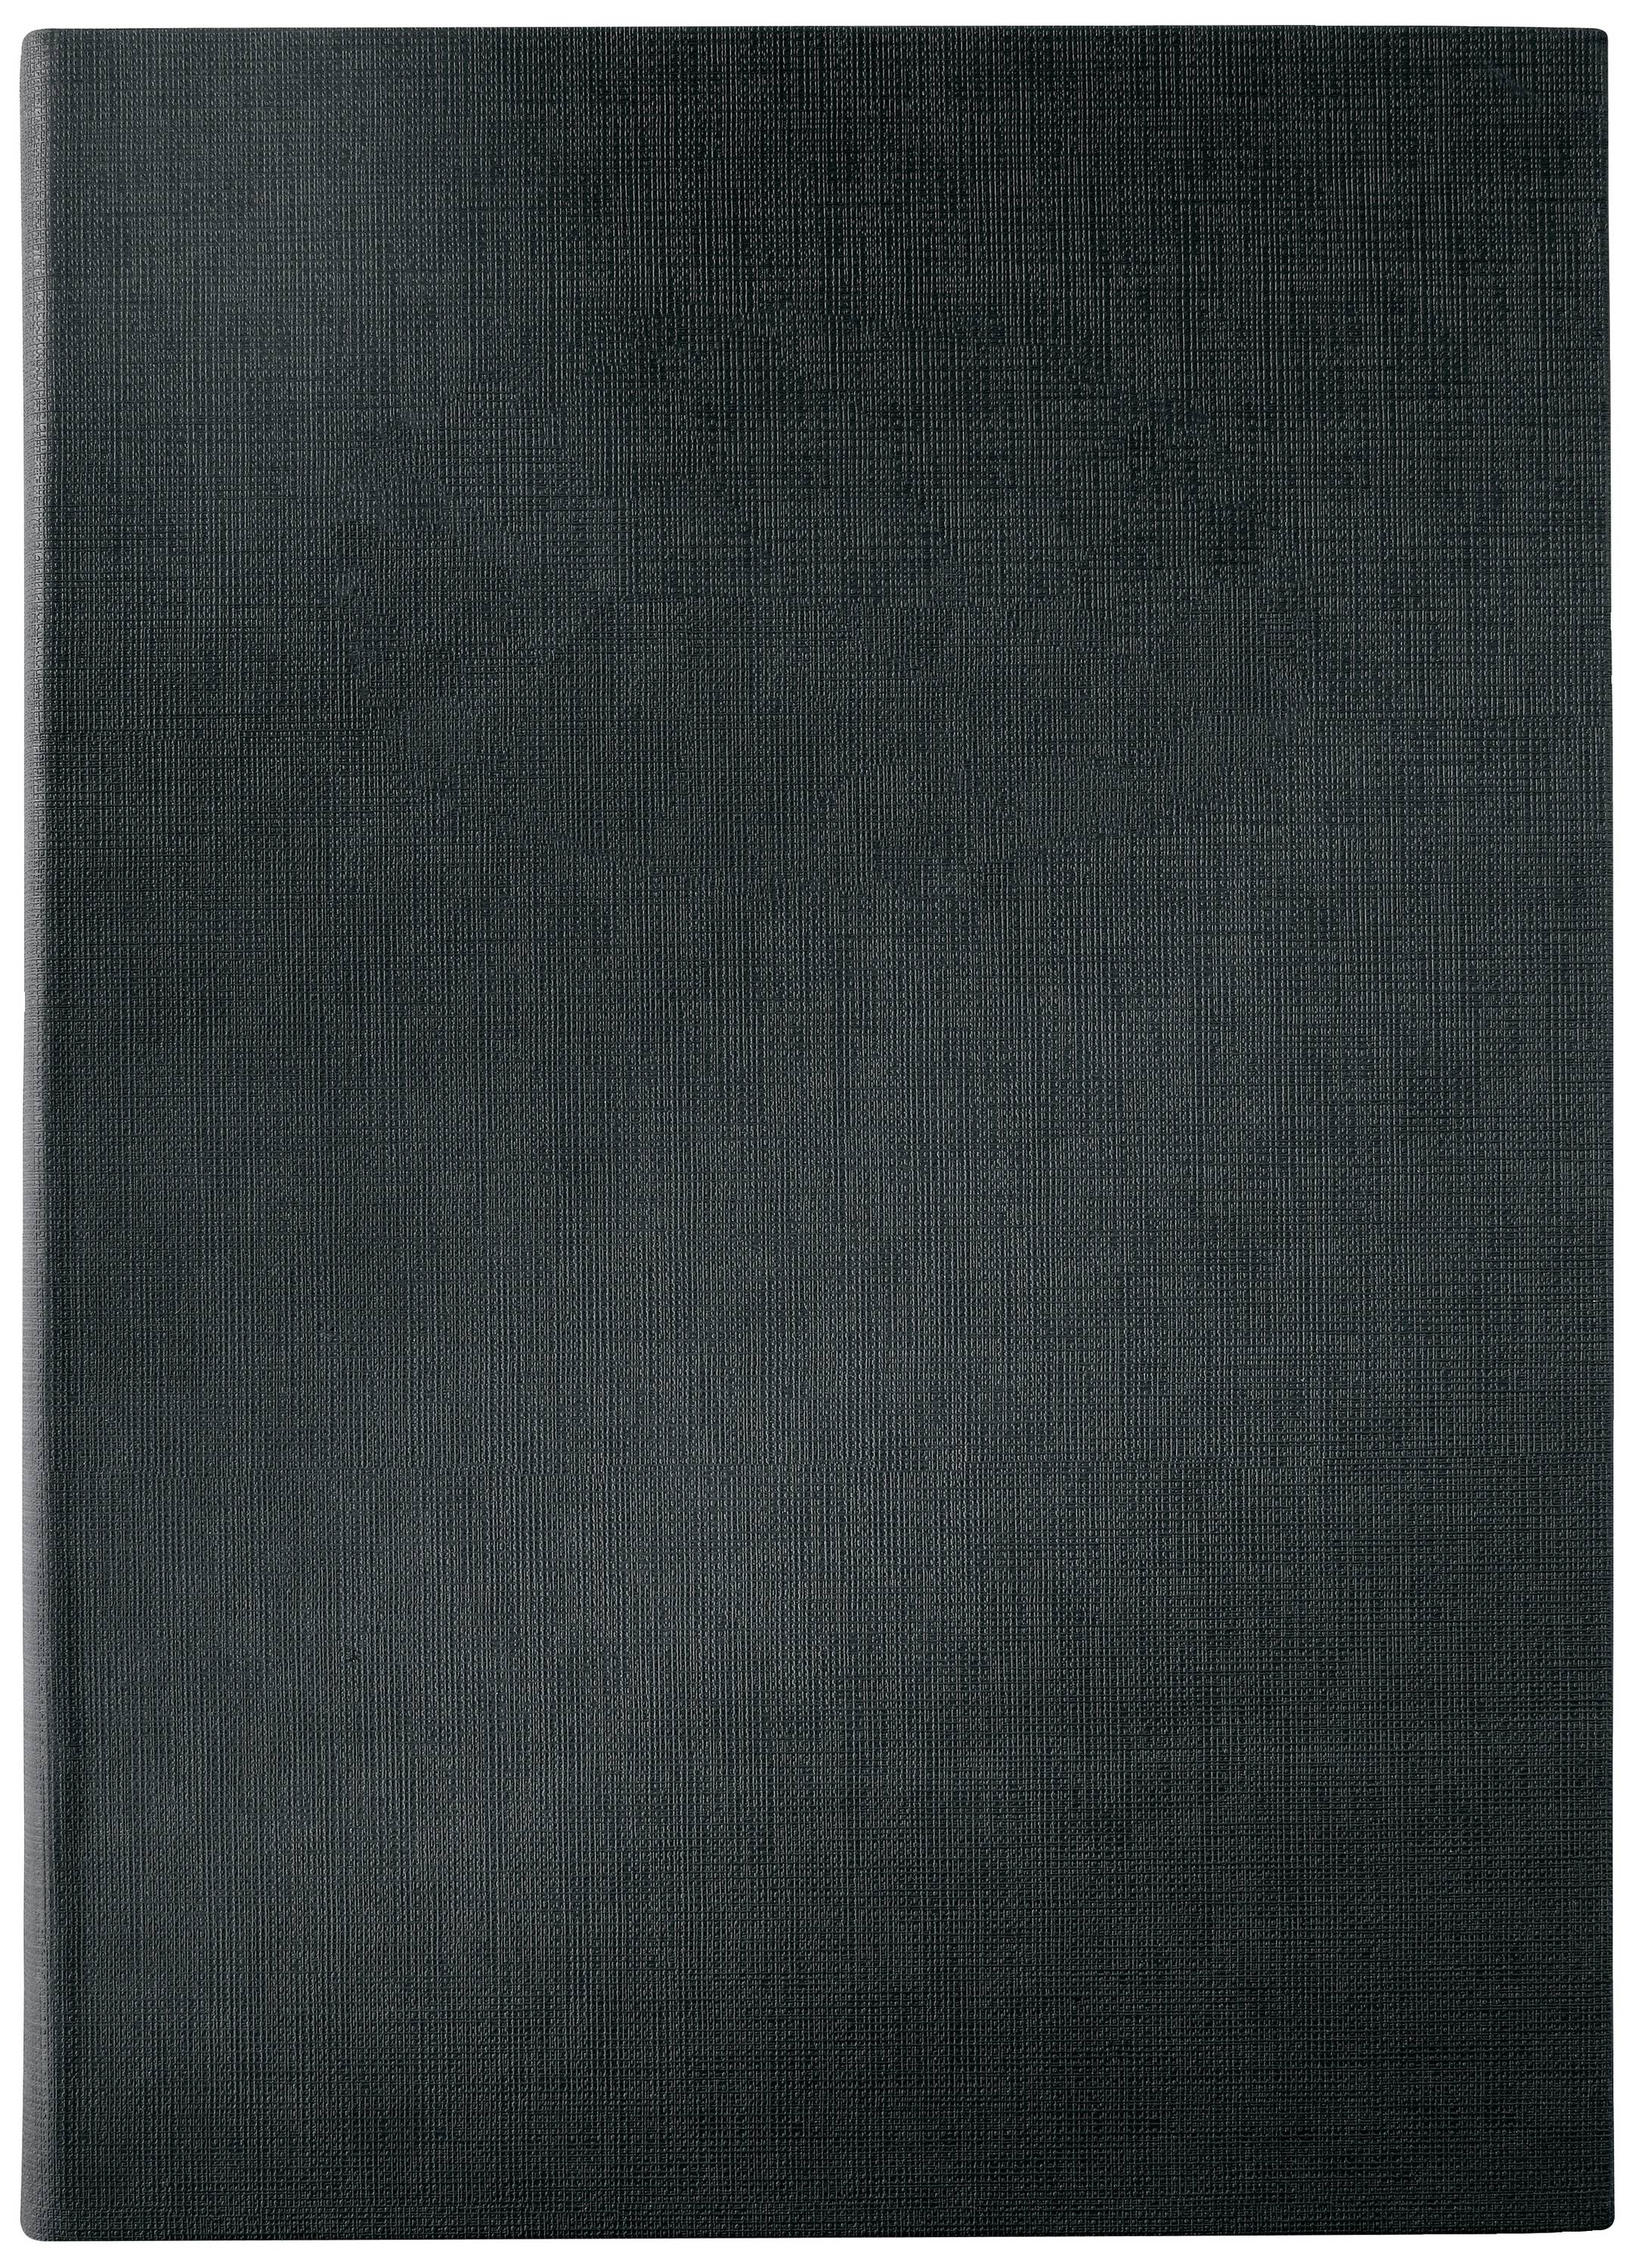 SIGEL Speisekarten-Mappe, A5, schwarz, Gummi-Bindung, blanko aus Kunststoff, mit 2 transparenten Dop